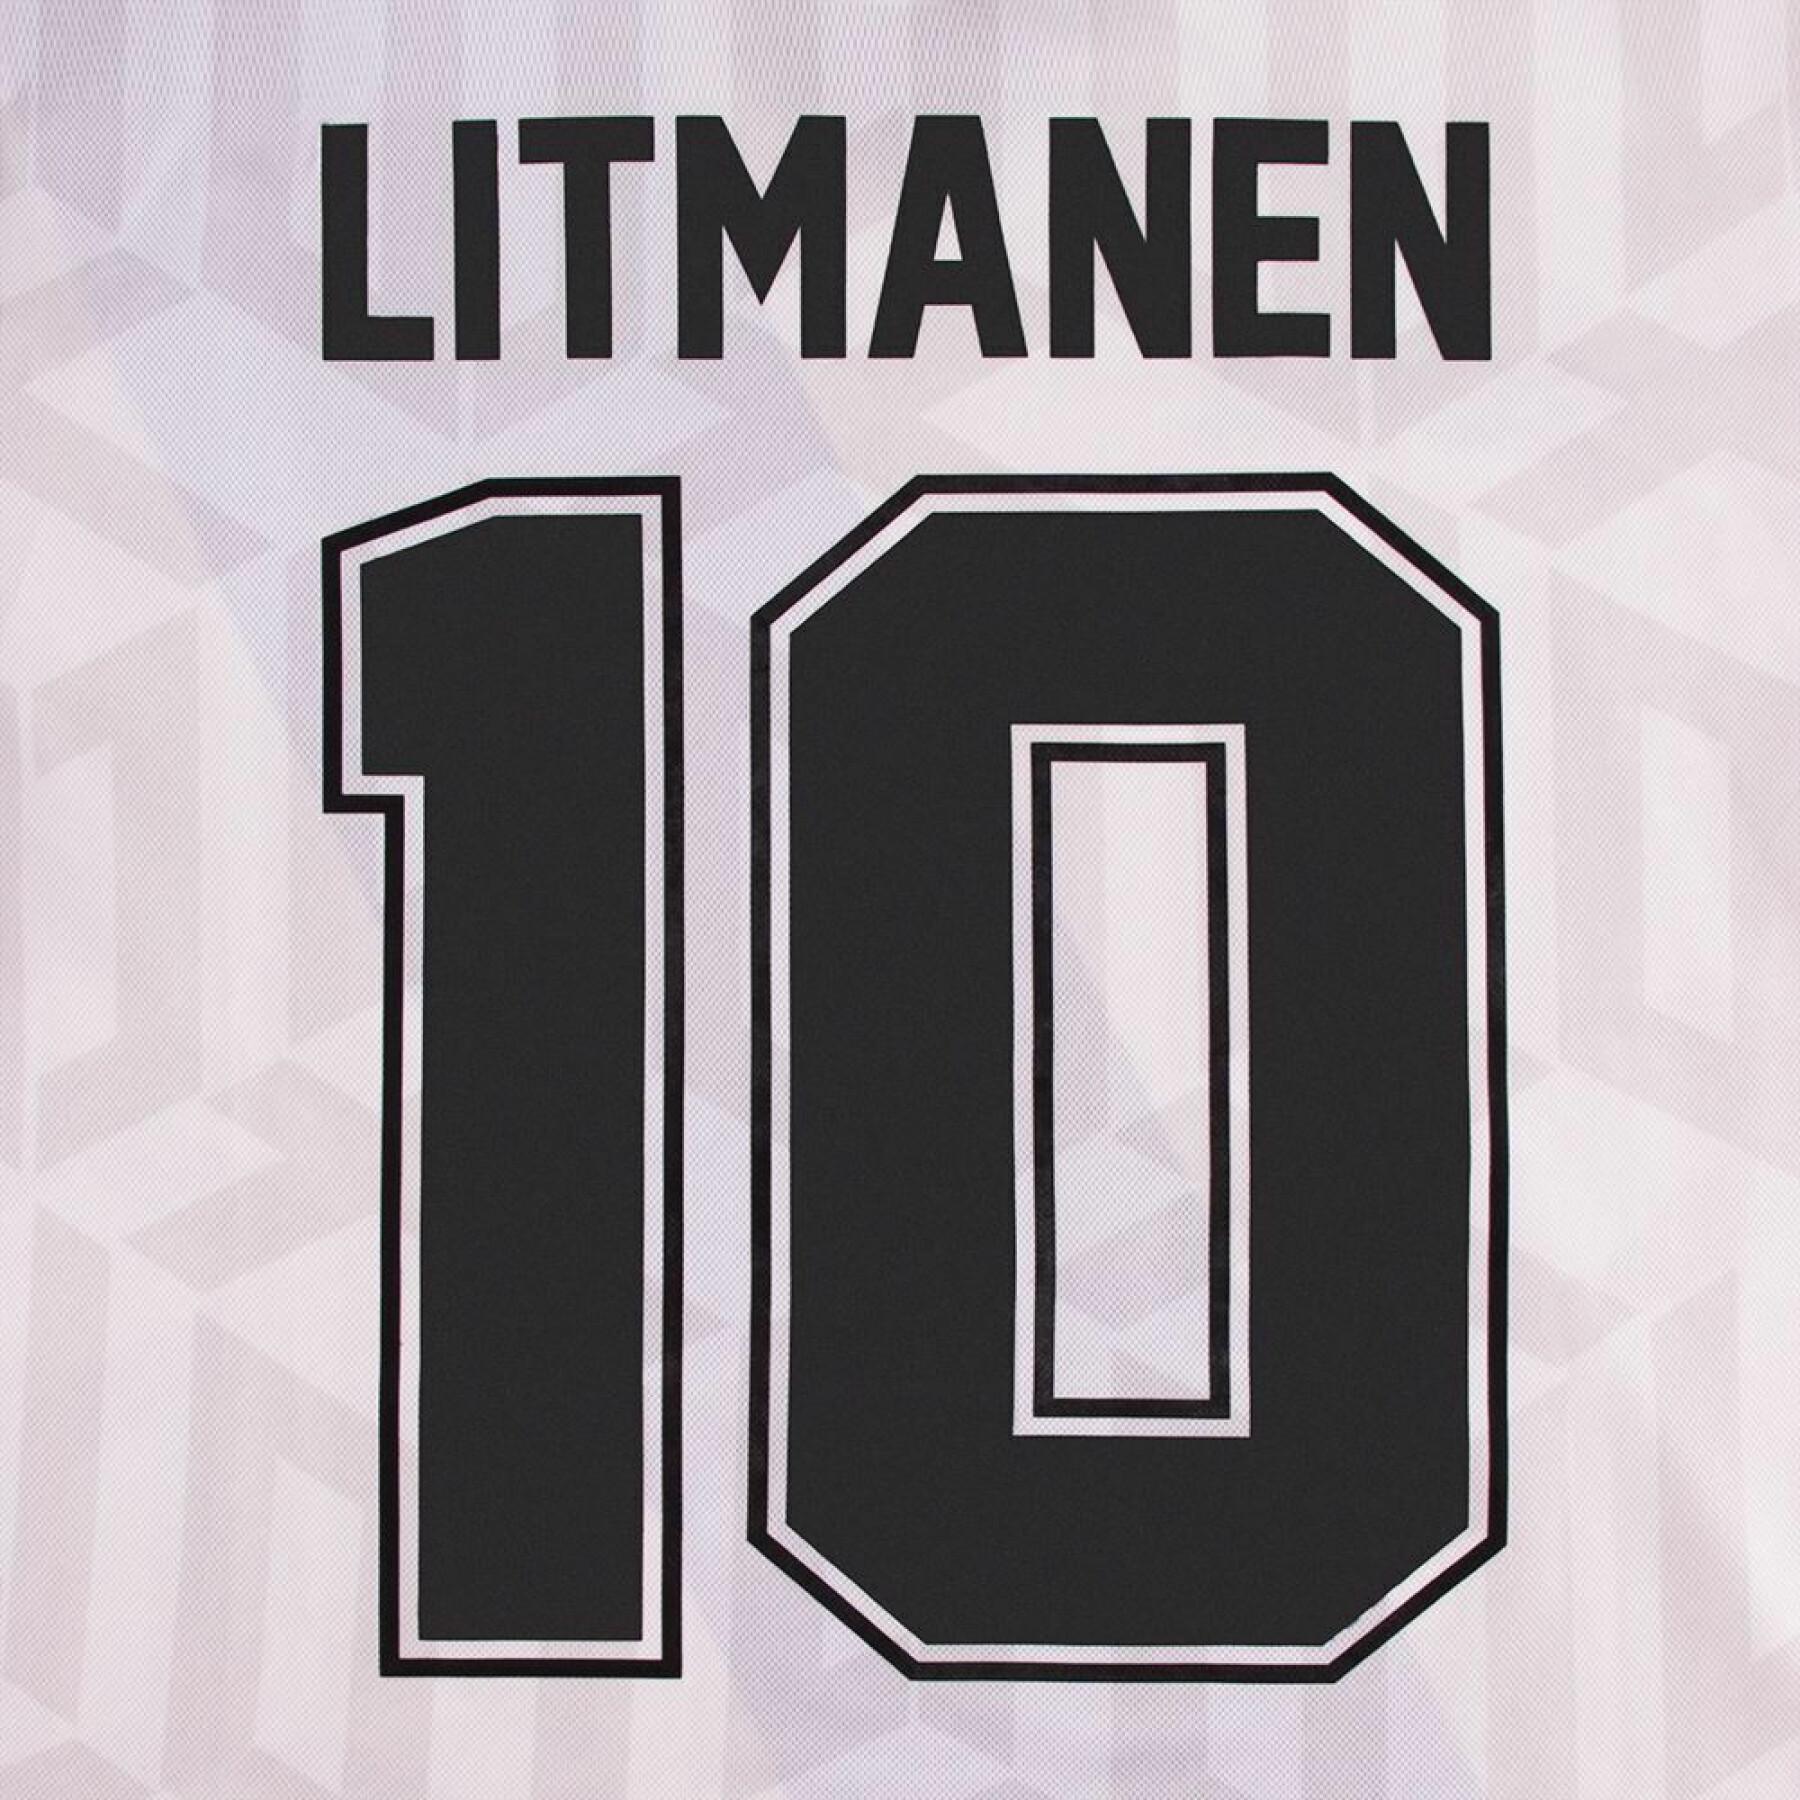 Camiseta Finlande Litmanen Retro